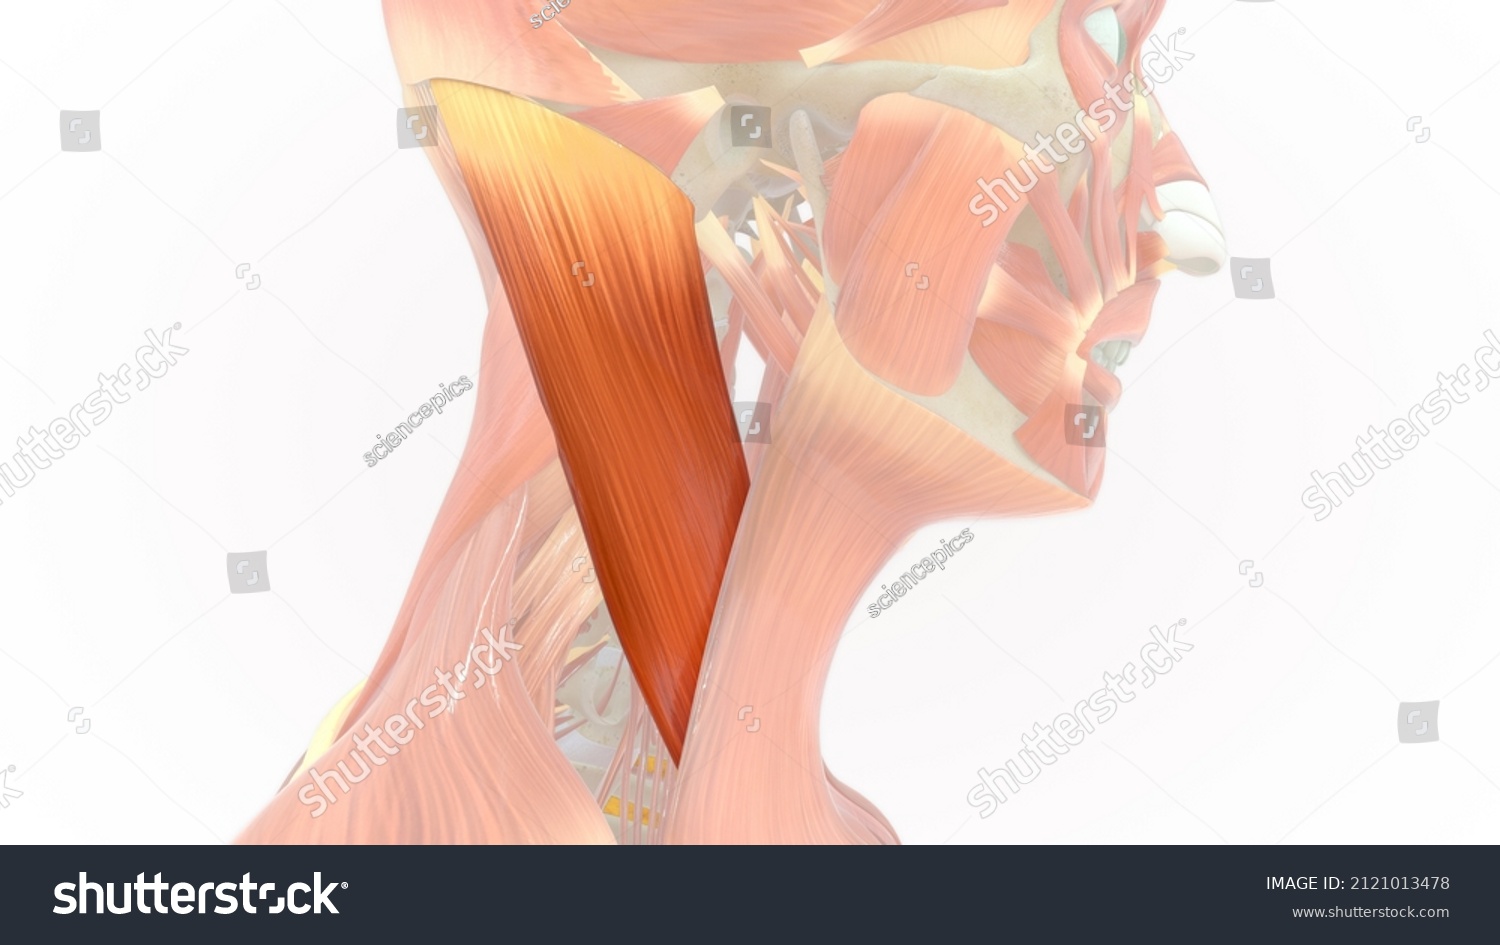 Sternocleidomastoid Muscle Anatomy 3d Illustration Stock Illustration 2121013478 Shutterstock 2252